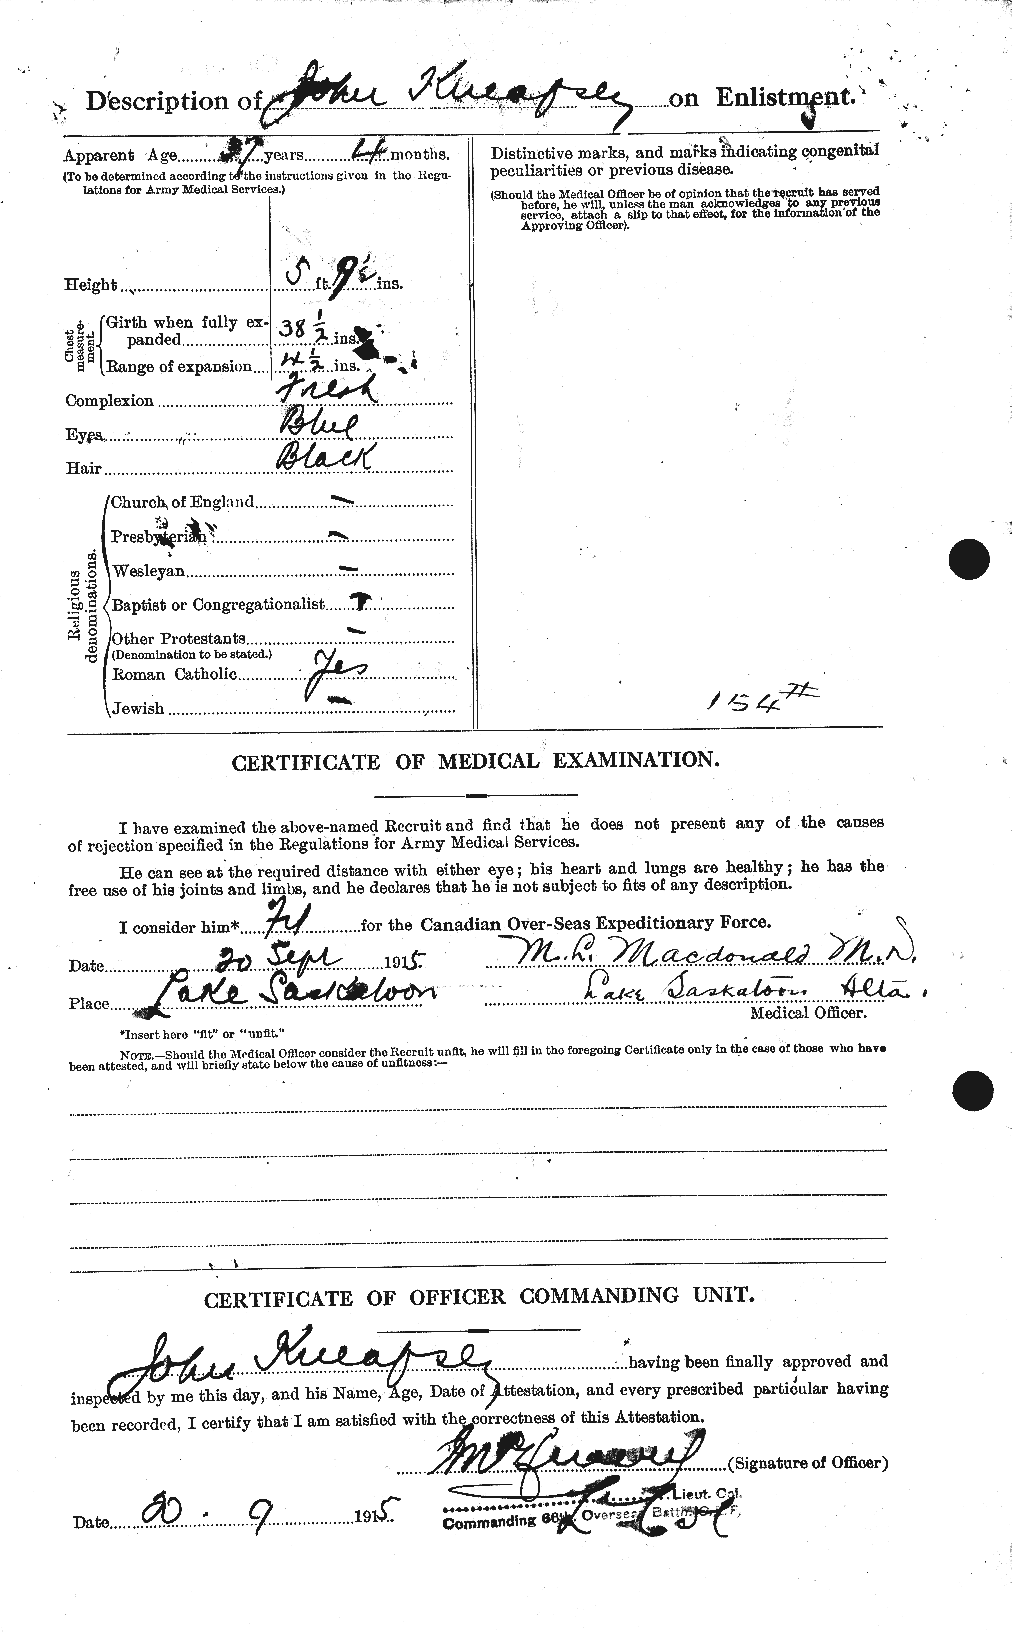 Dossiers du Personnel de la Première Guerre mondiale - CEC 435882b